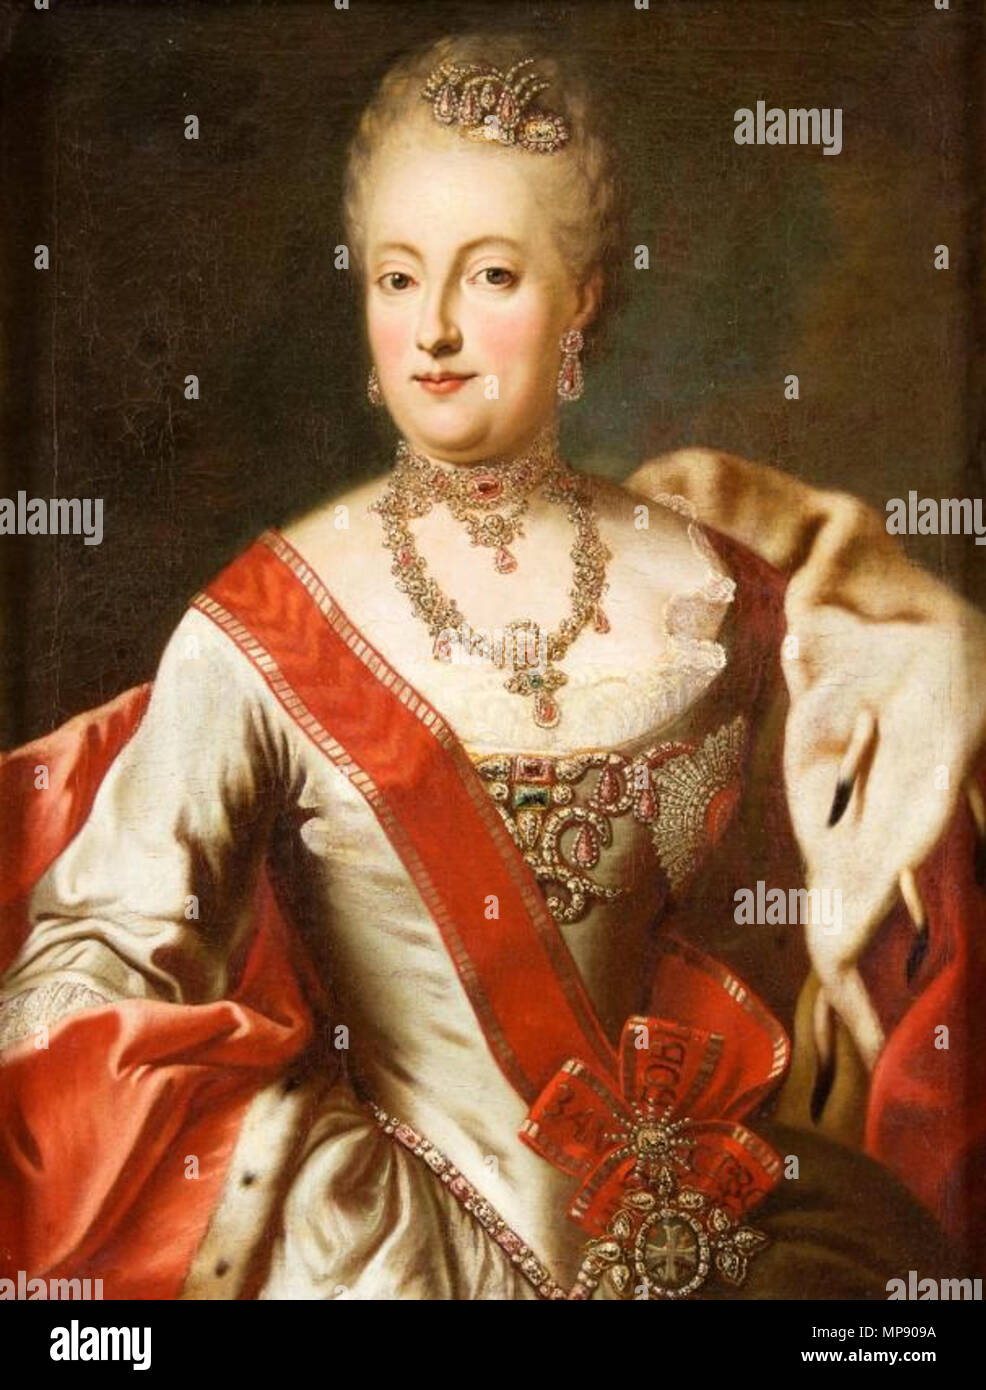 . Englisch: Portrait von Maria Anna Sophia von Sachsen (1728-1797), als Portrait von Katharina II. von Russland falsch identifiziert. . 18. 790 Lampi, Kreis von - Maria Anna Sophia von Sachsen Stockfoto